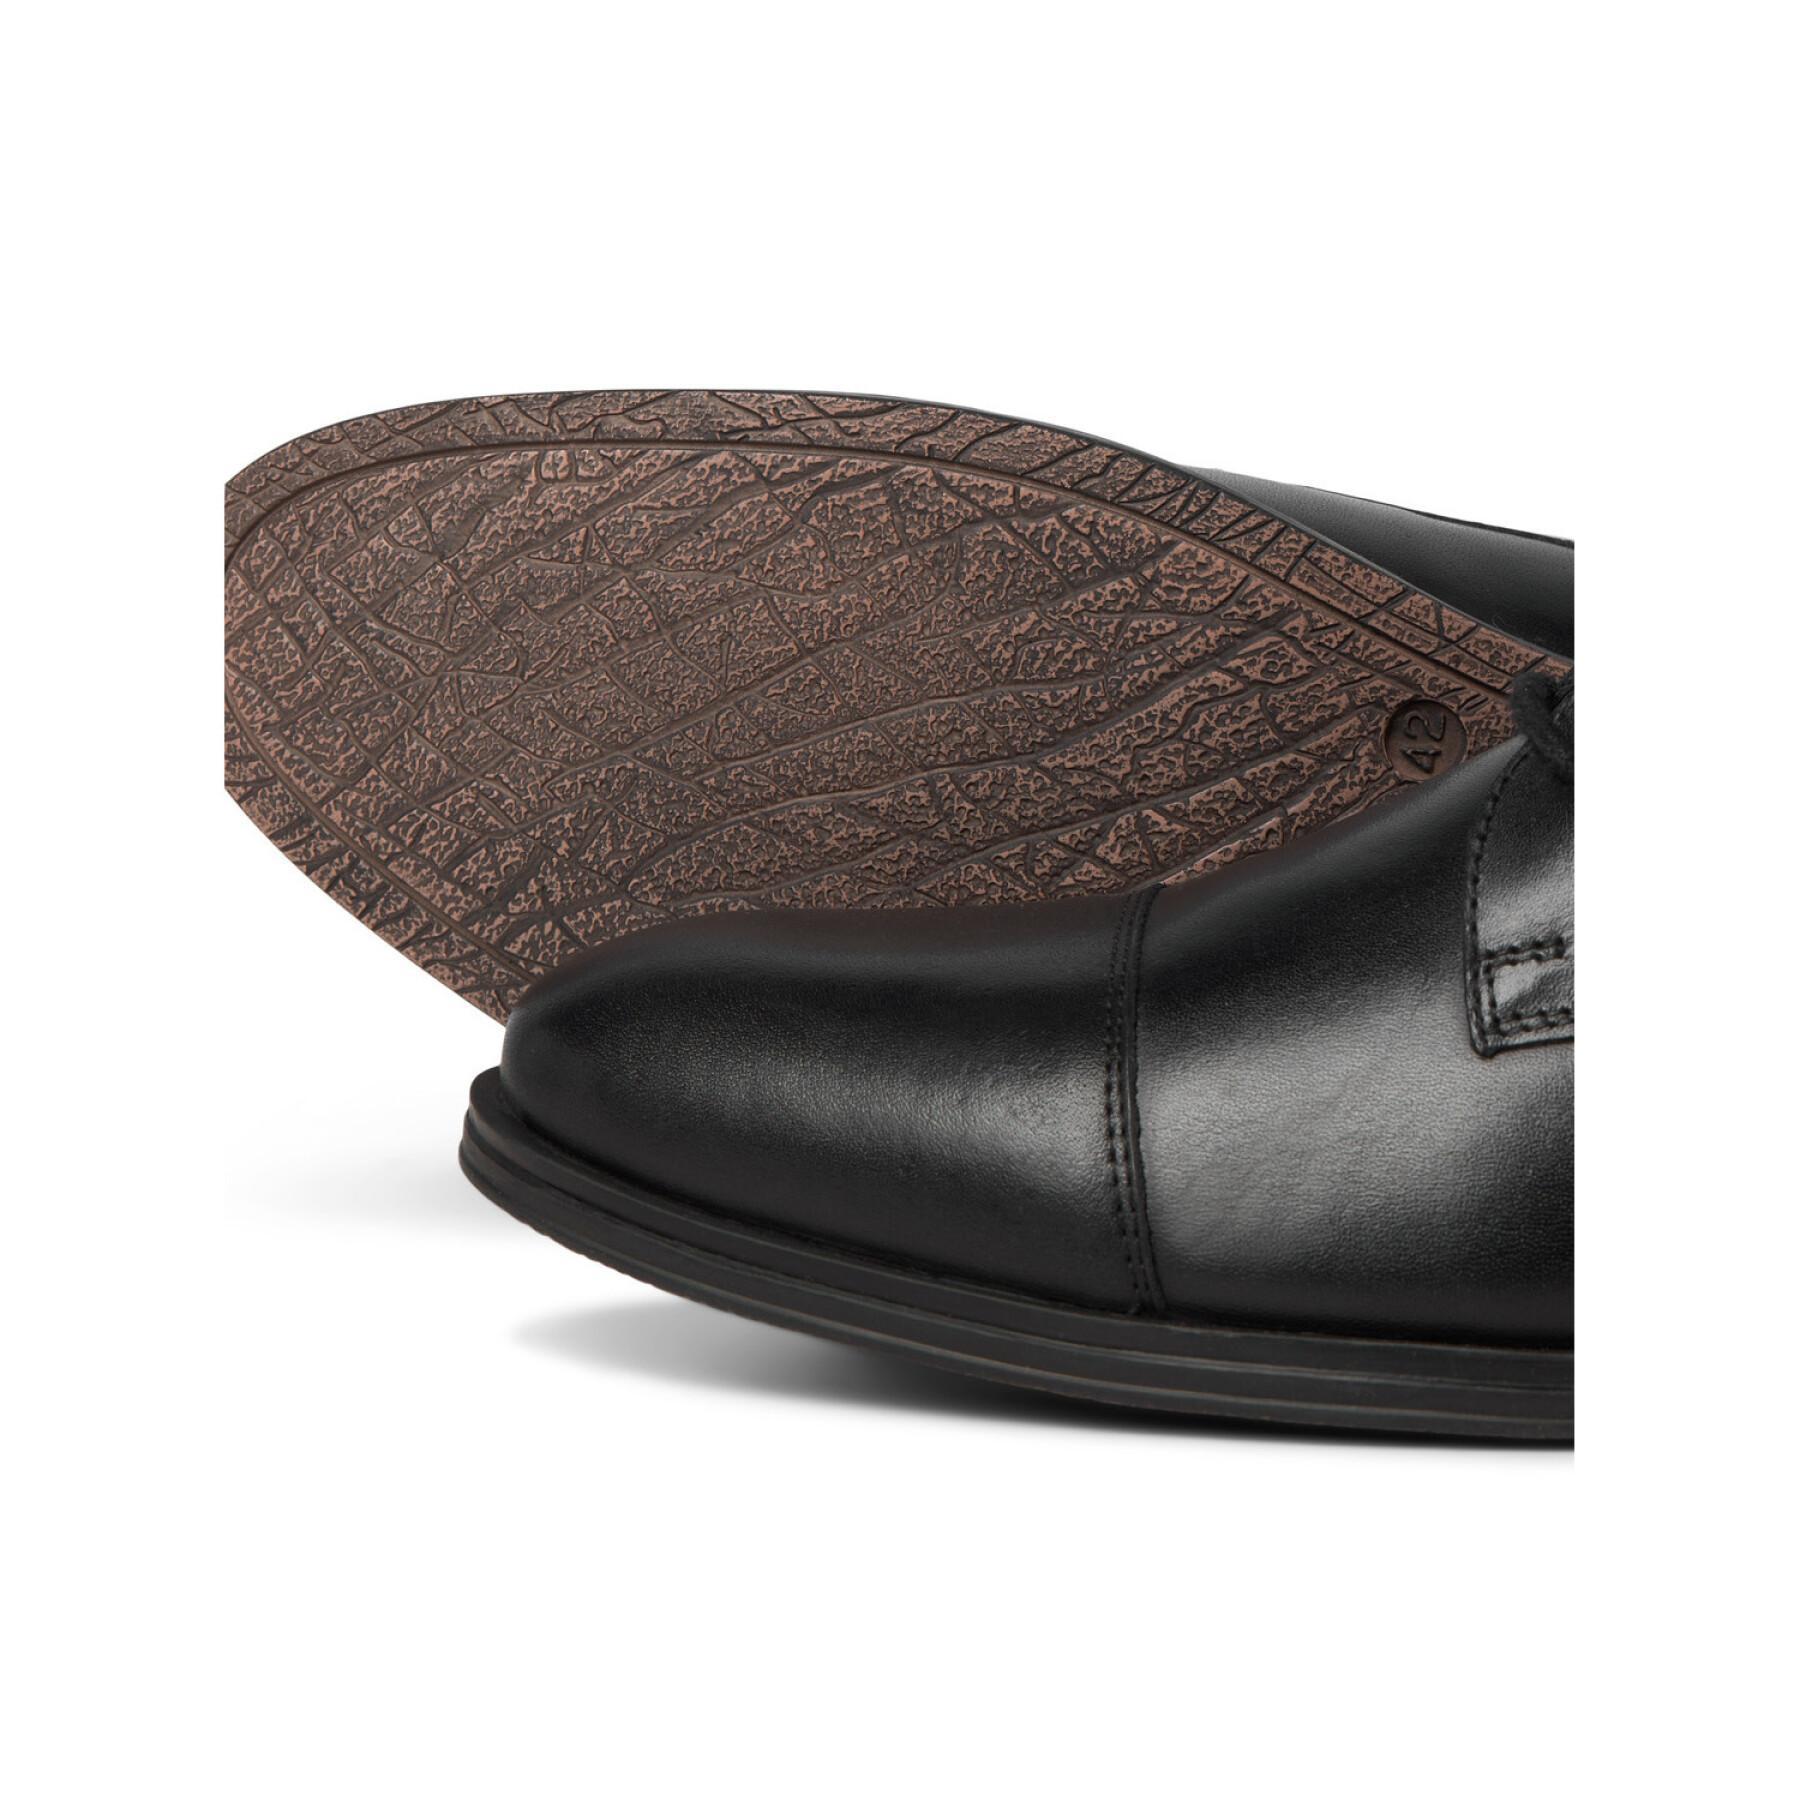 Leather loafers Jack & Jones Raymond